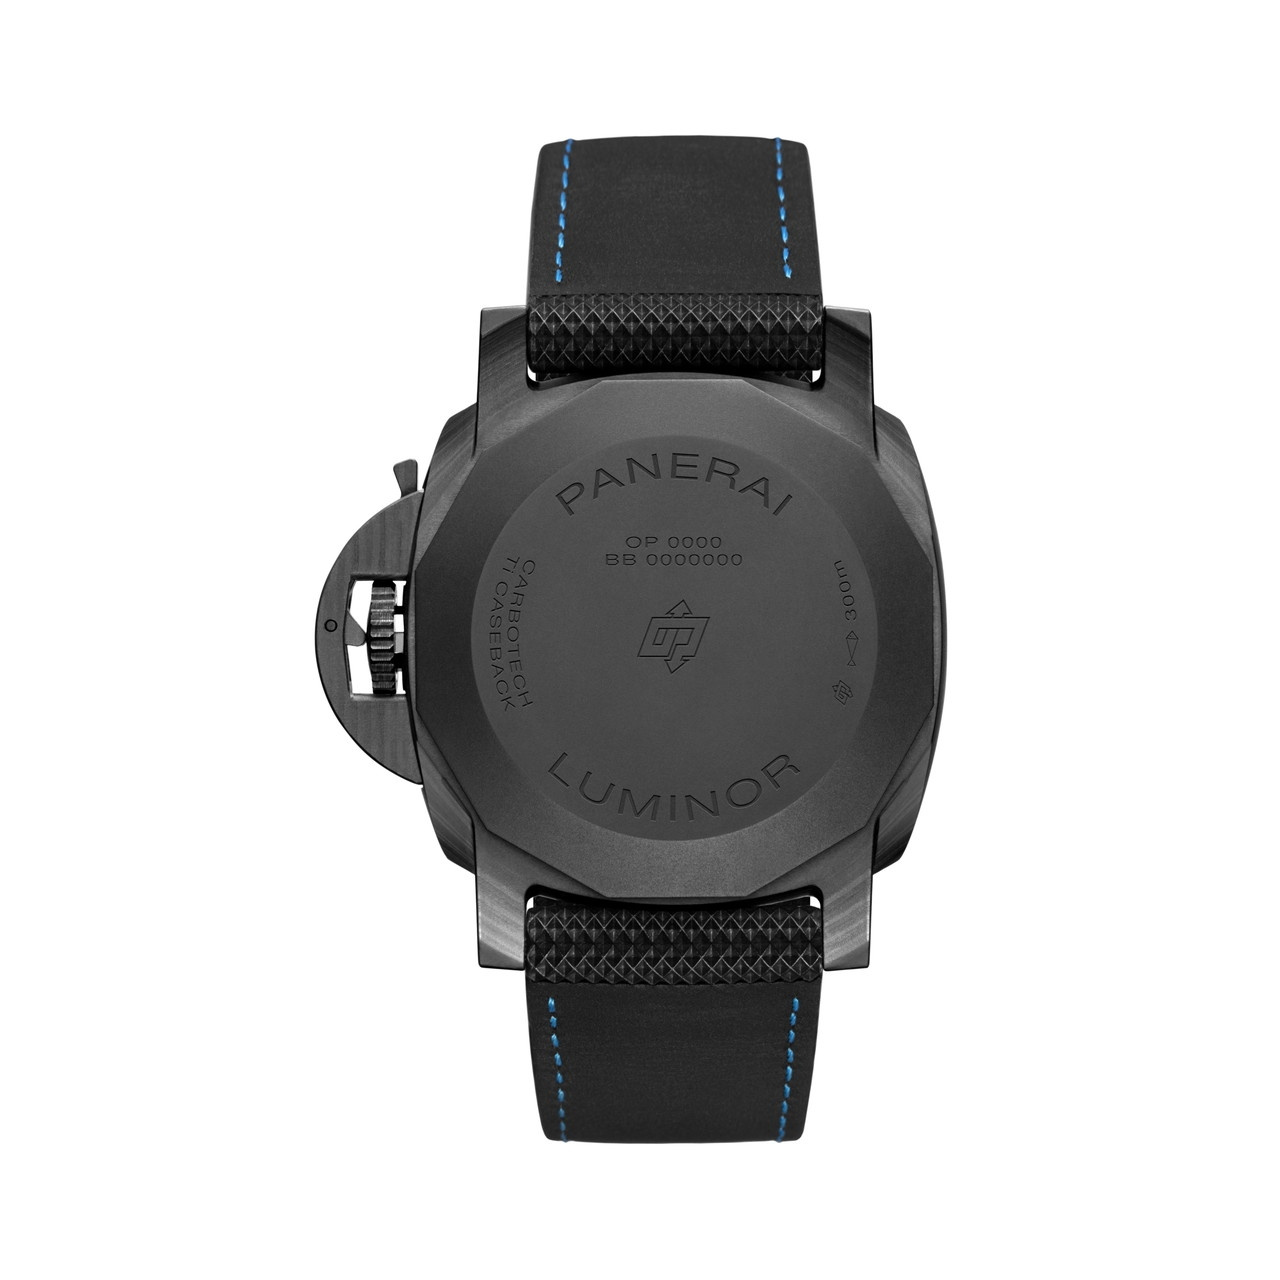 ルミノール マリーナ カーボテック Ref.PAM01661 未使用品 メンズ 腕時計